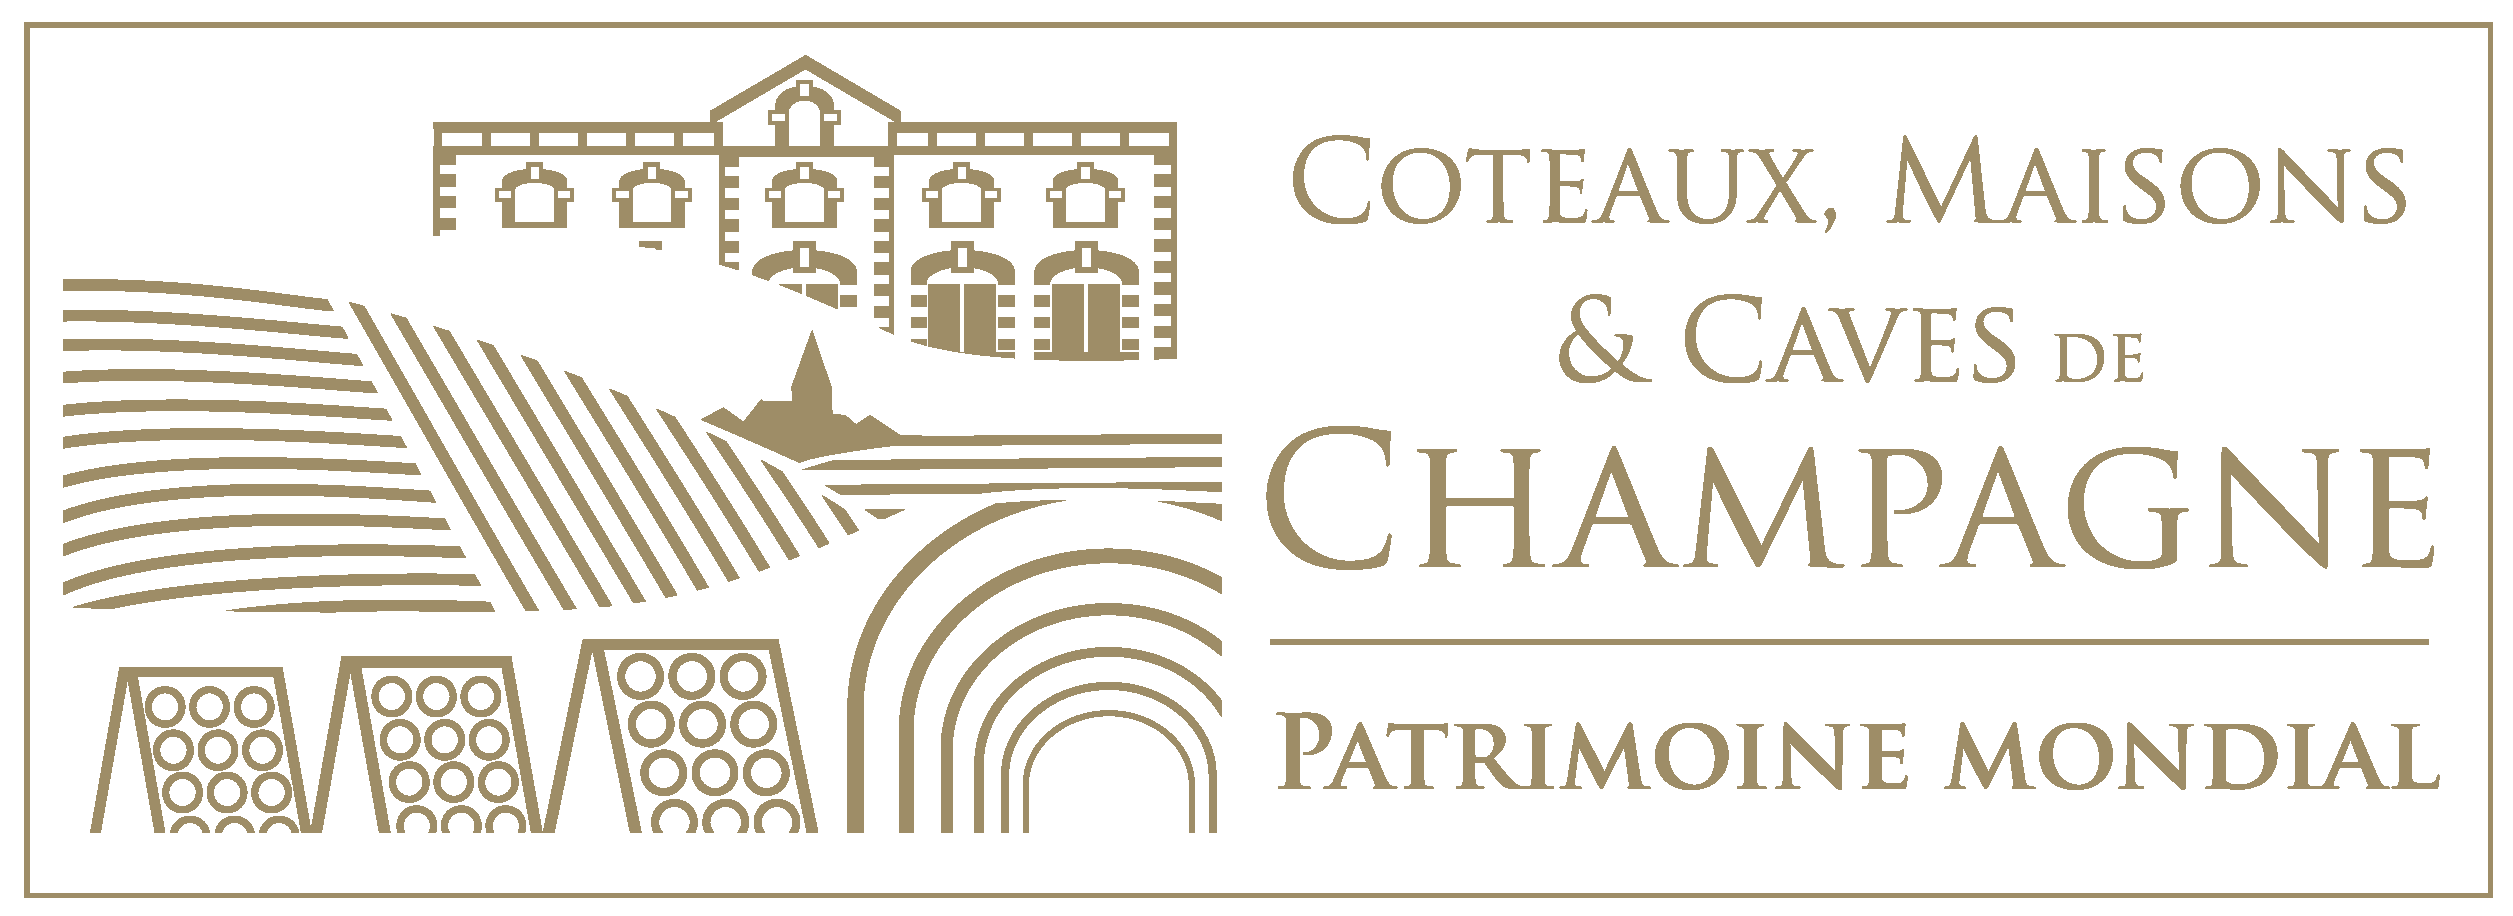 Coteau, Maisons & Caves de Champagne - Patrimoine Mondial